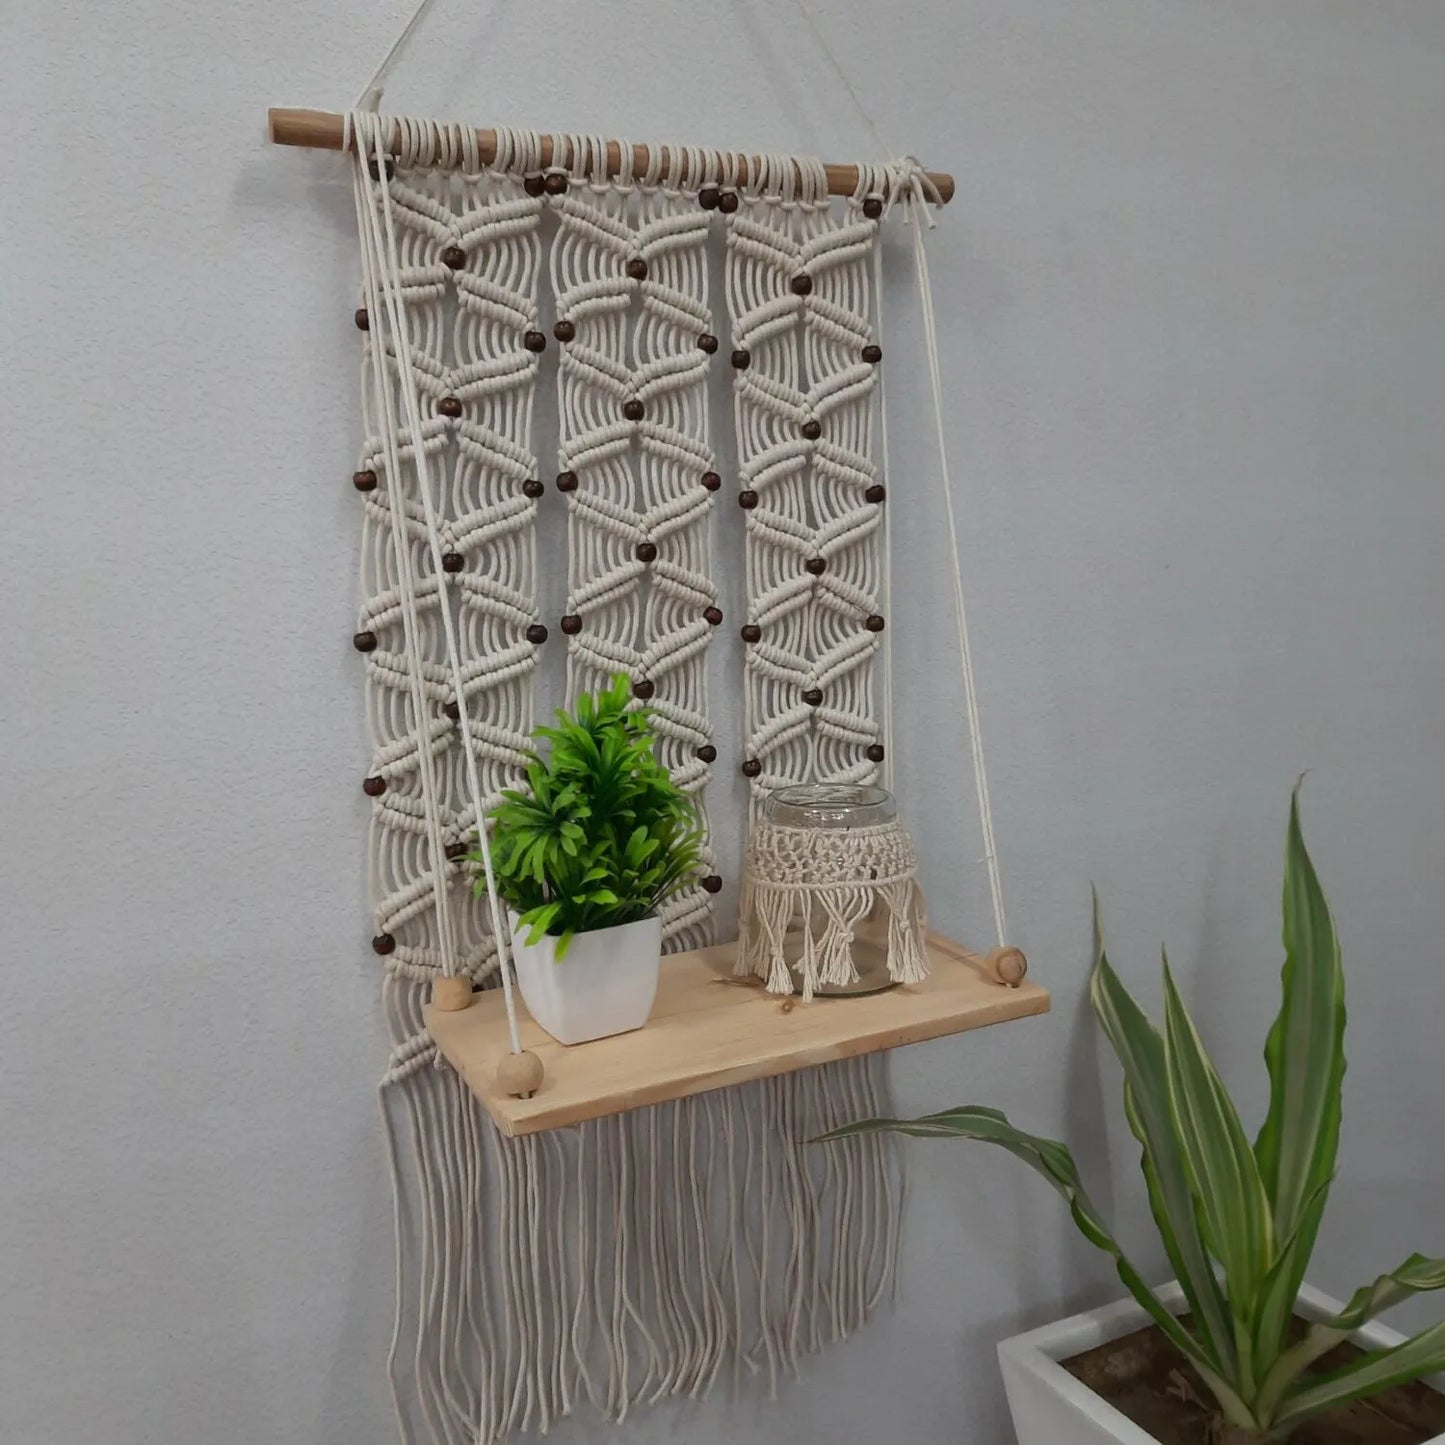 Avioni Home Boho Collection – Hand Knotted Macramé Hanging Single Shelf With Pine Wood Shelf